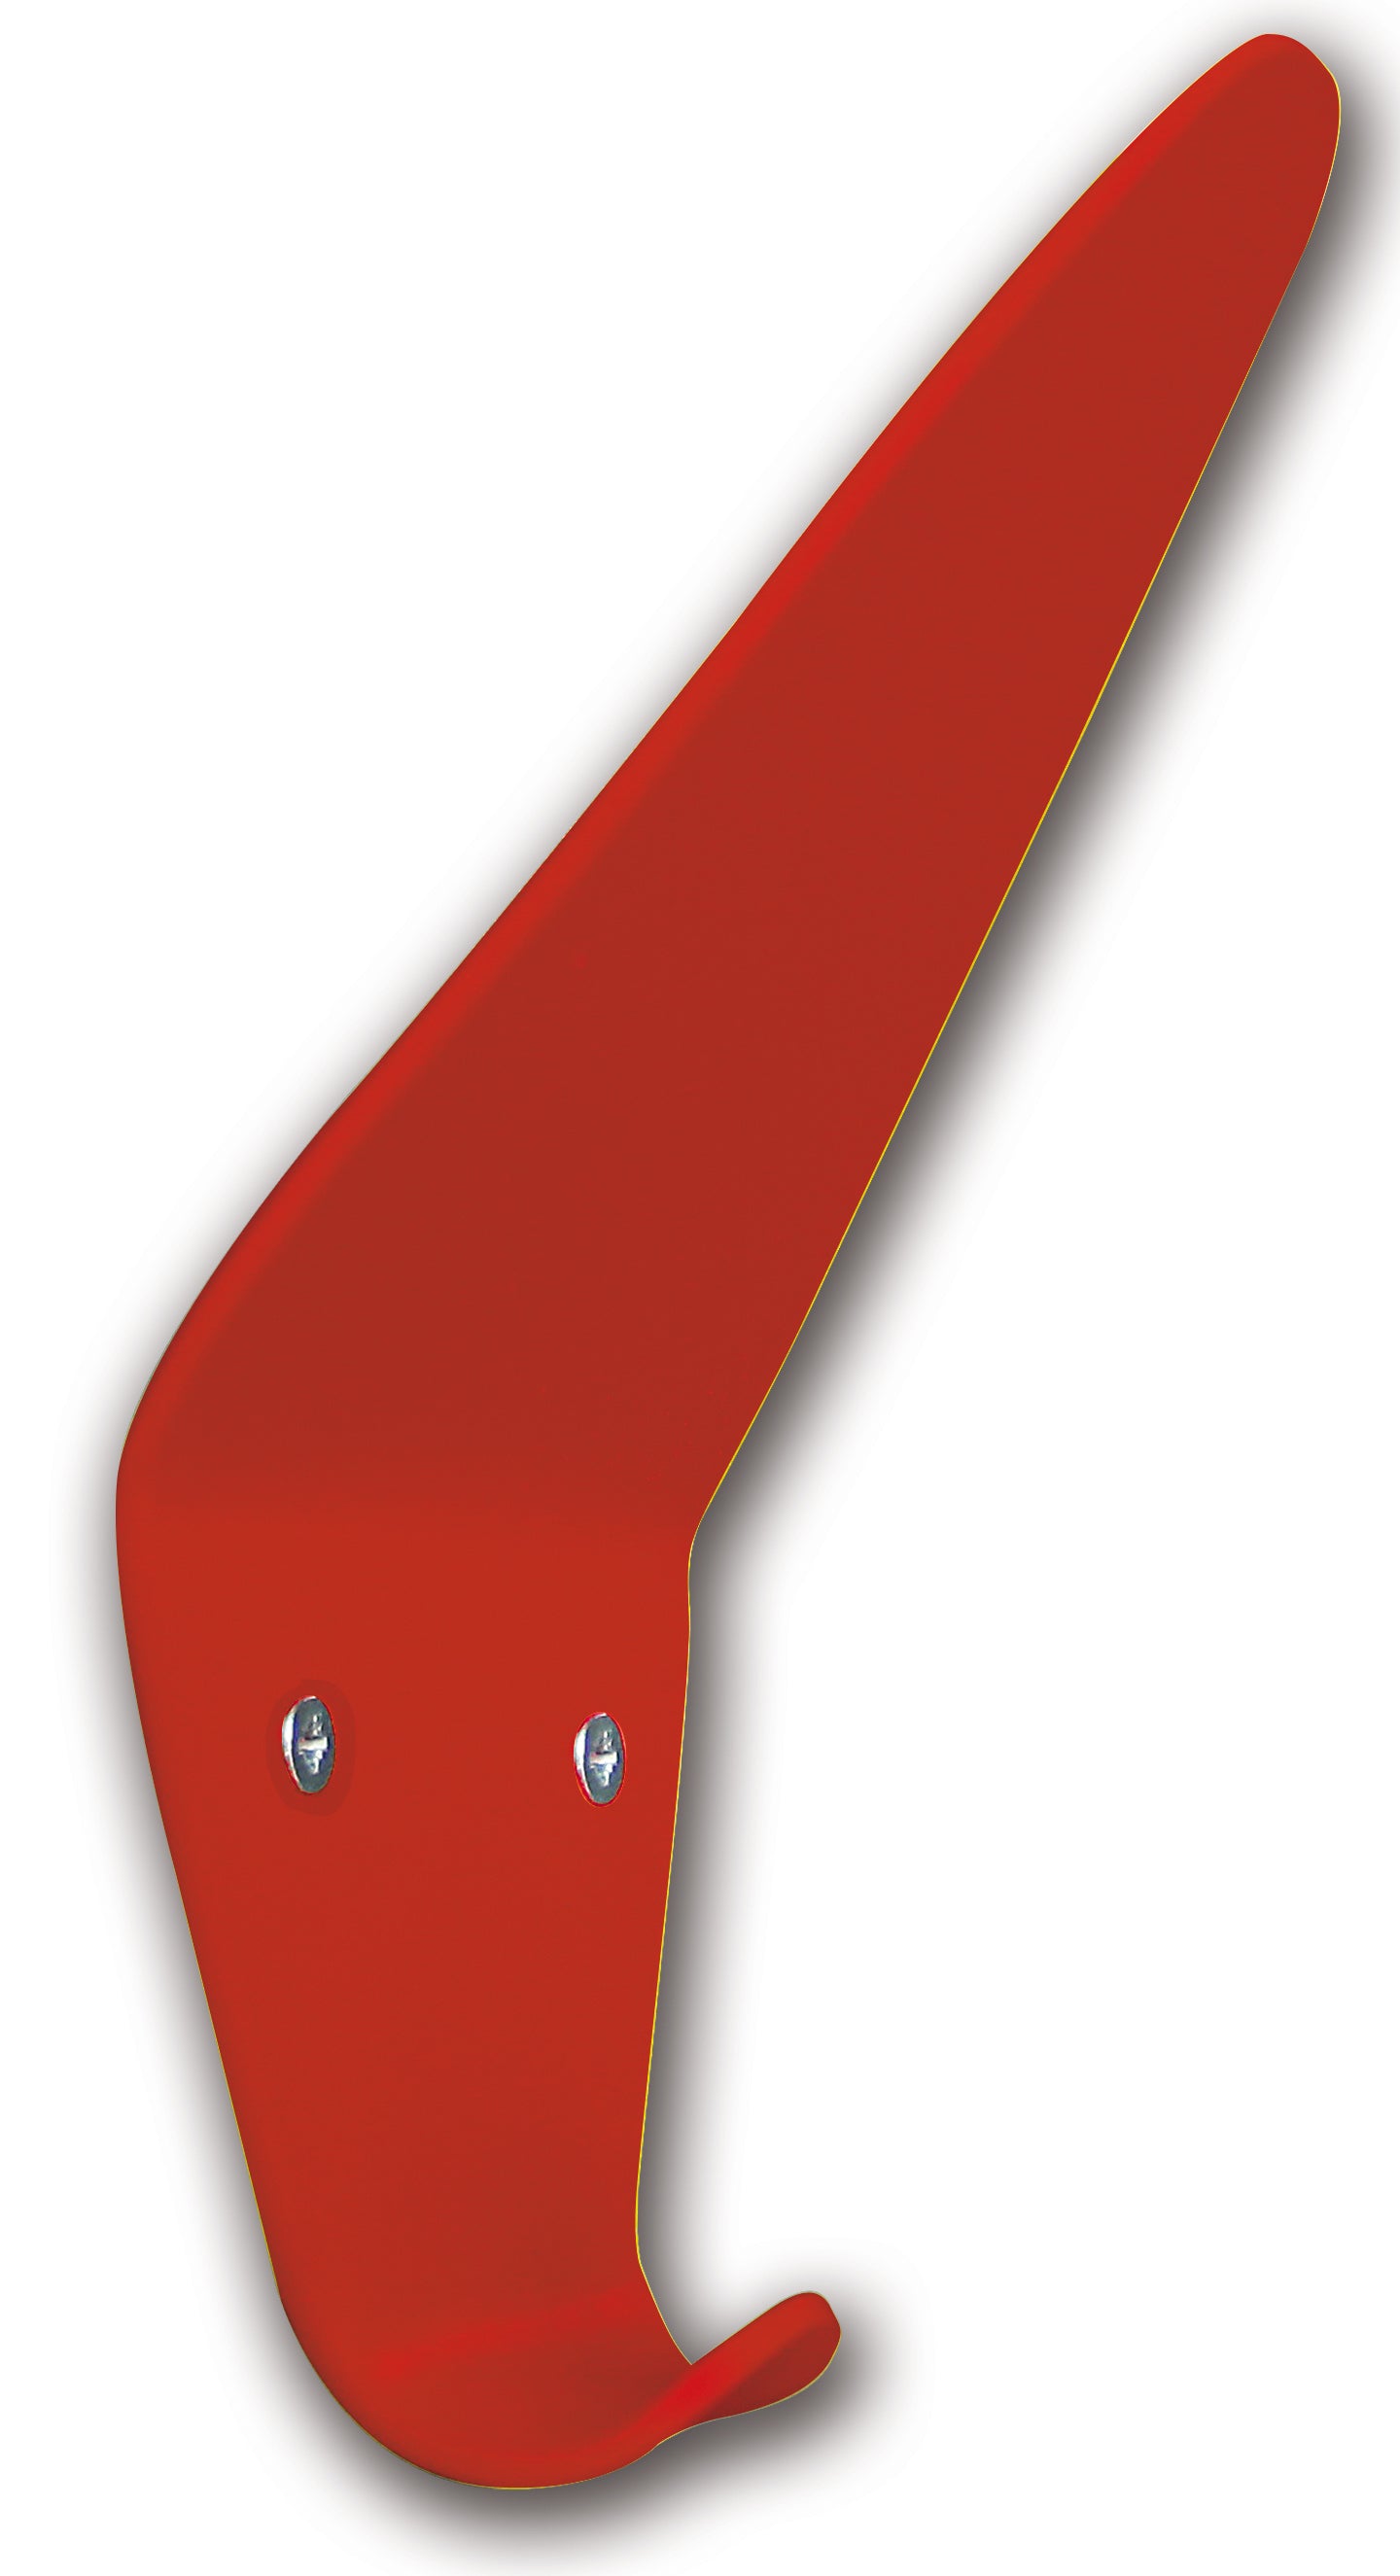 Garderobenhaken Arosa von Iserlohner Haken in der Farbe Rot